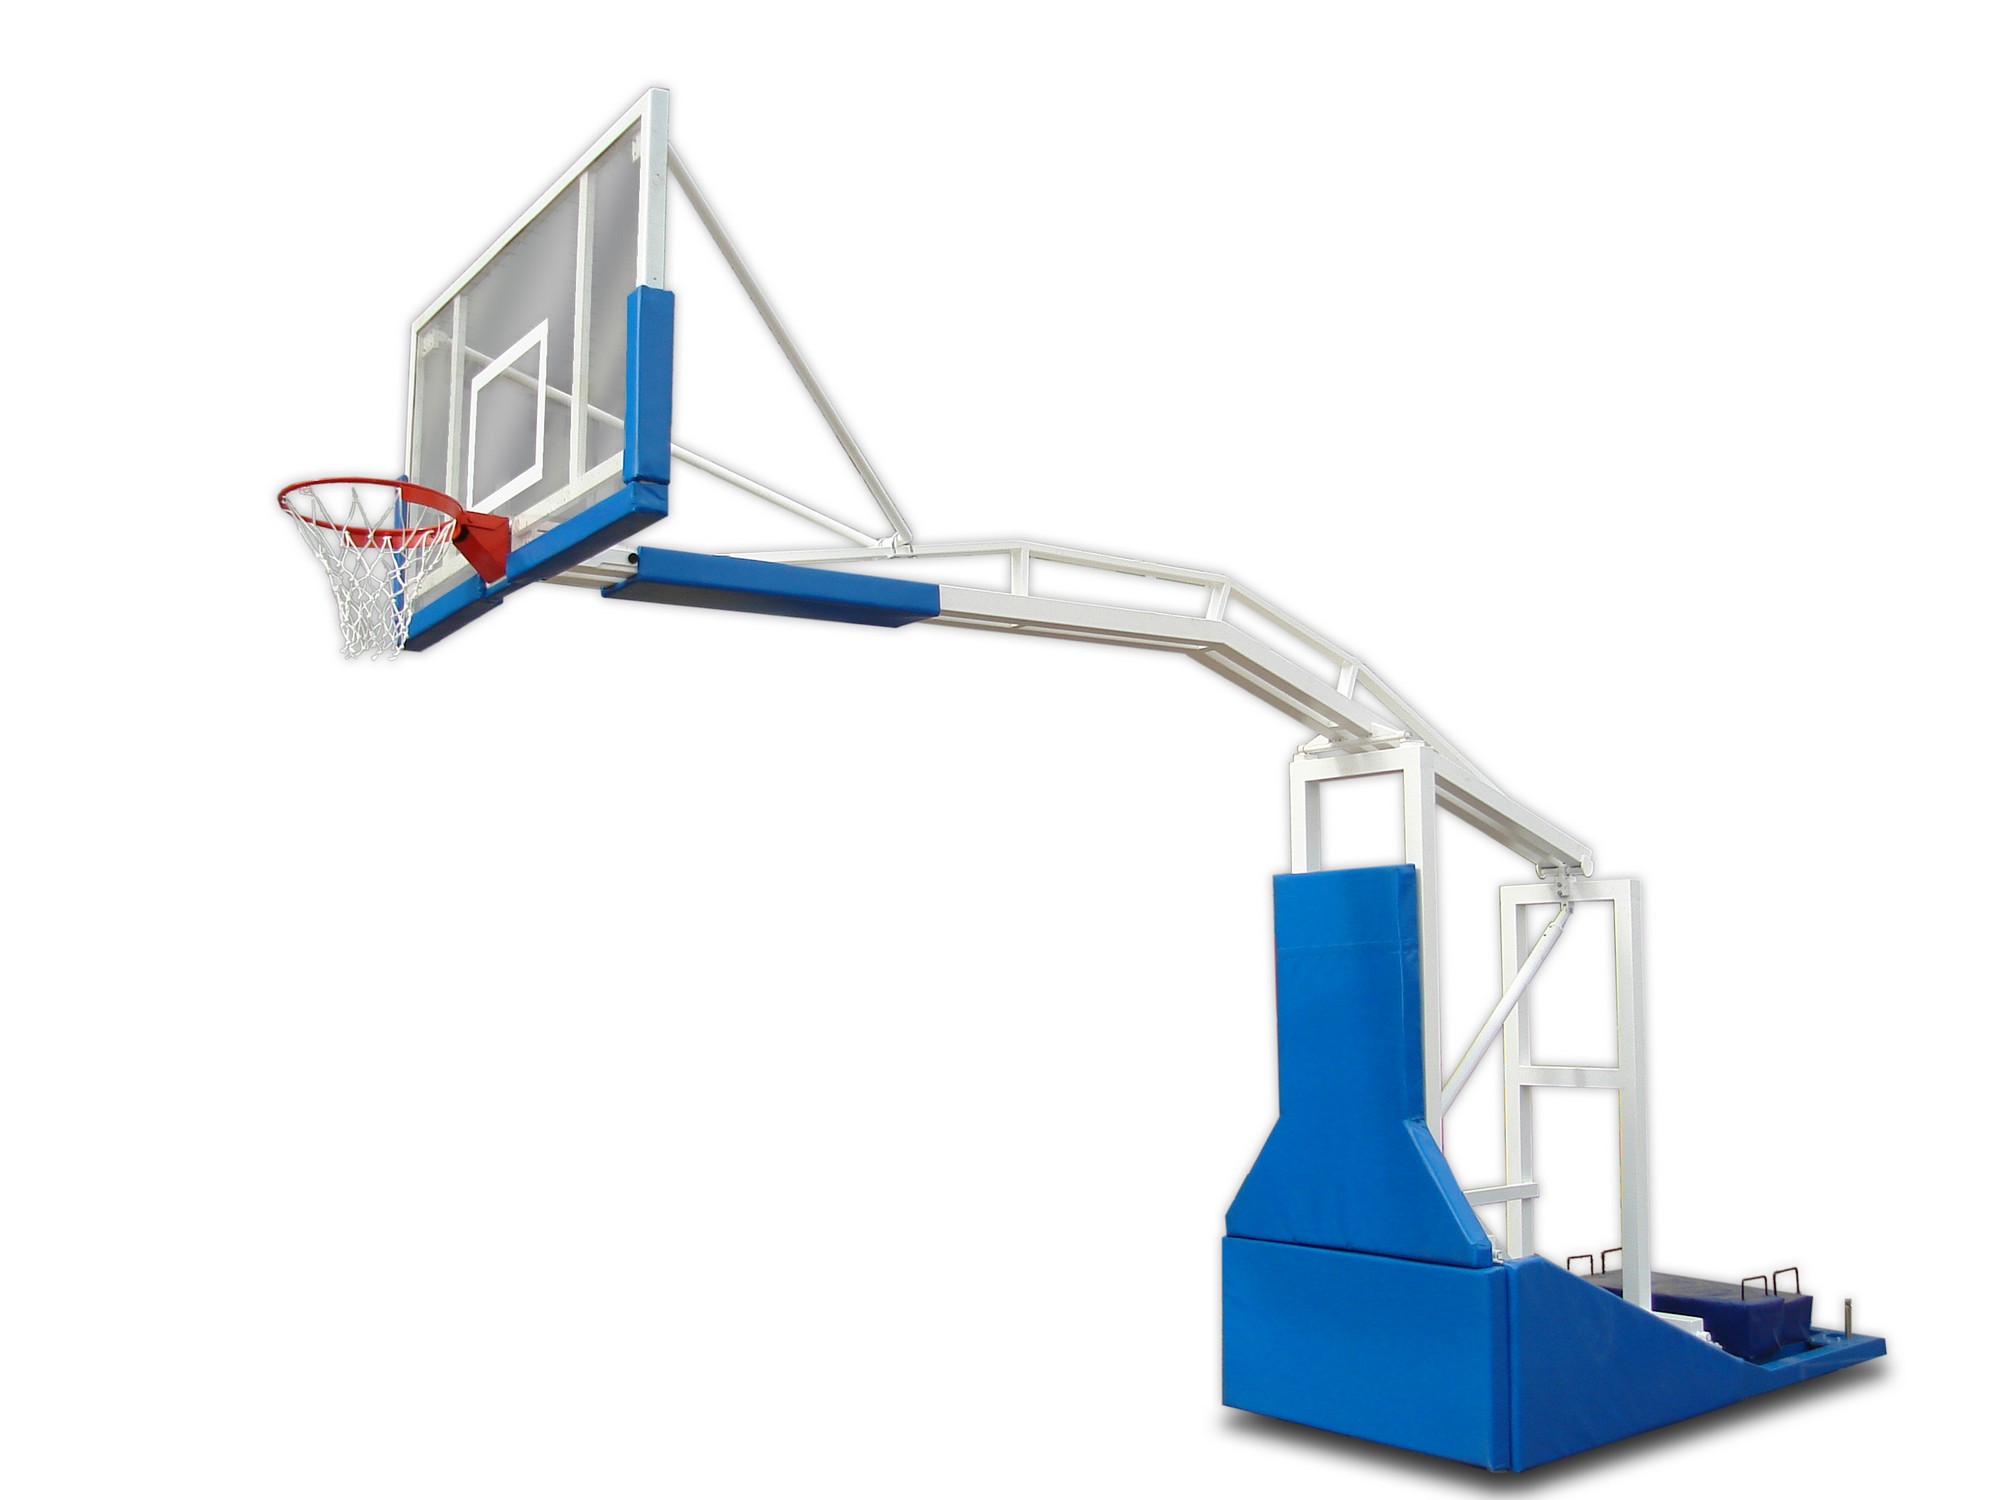 Стойка баскетбольная ФСИ мобильная складная, с выносом 2,25м, с электроподьемом стрелы, без противовесов 9108 2000_1500